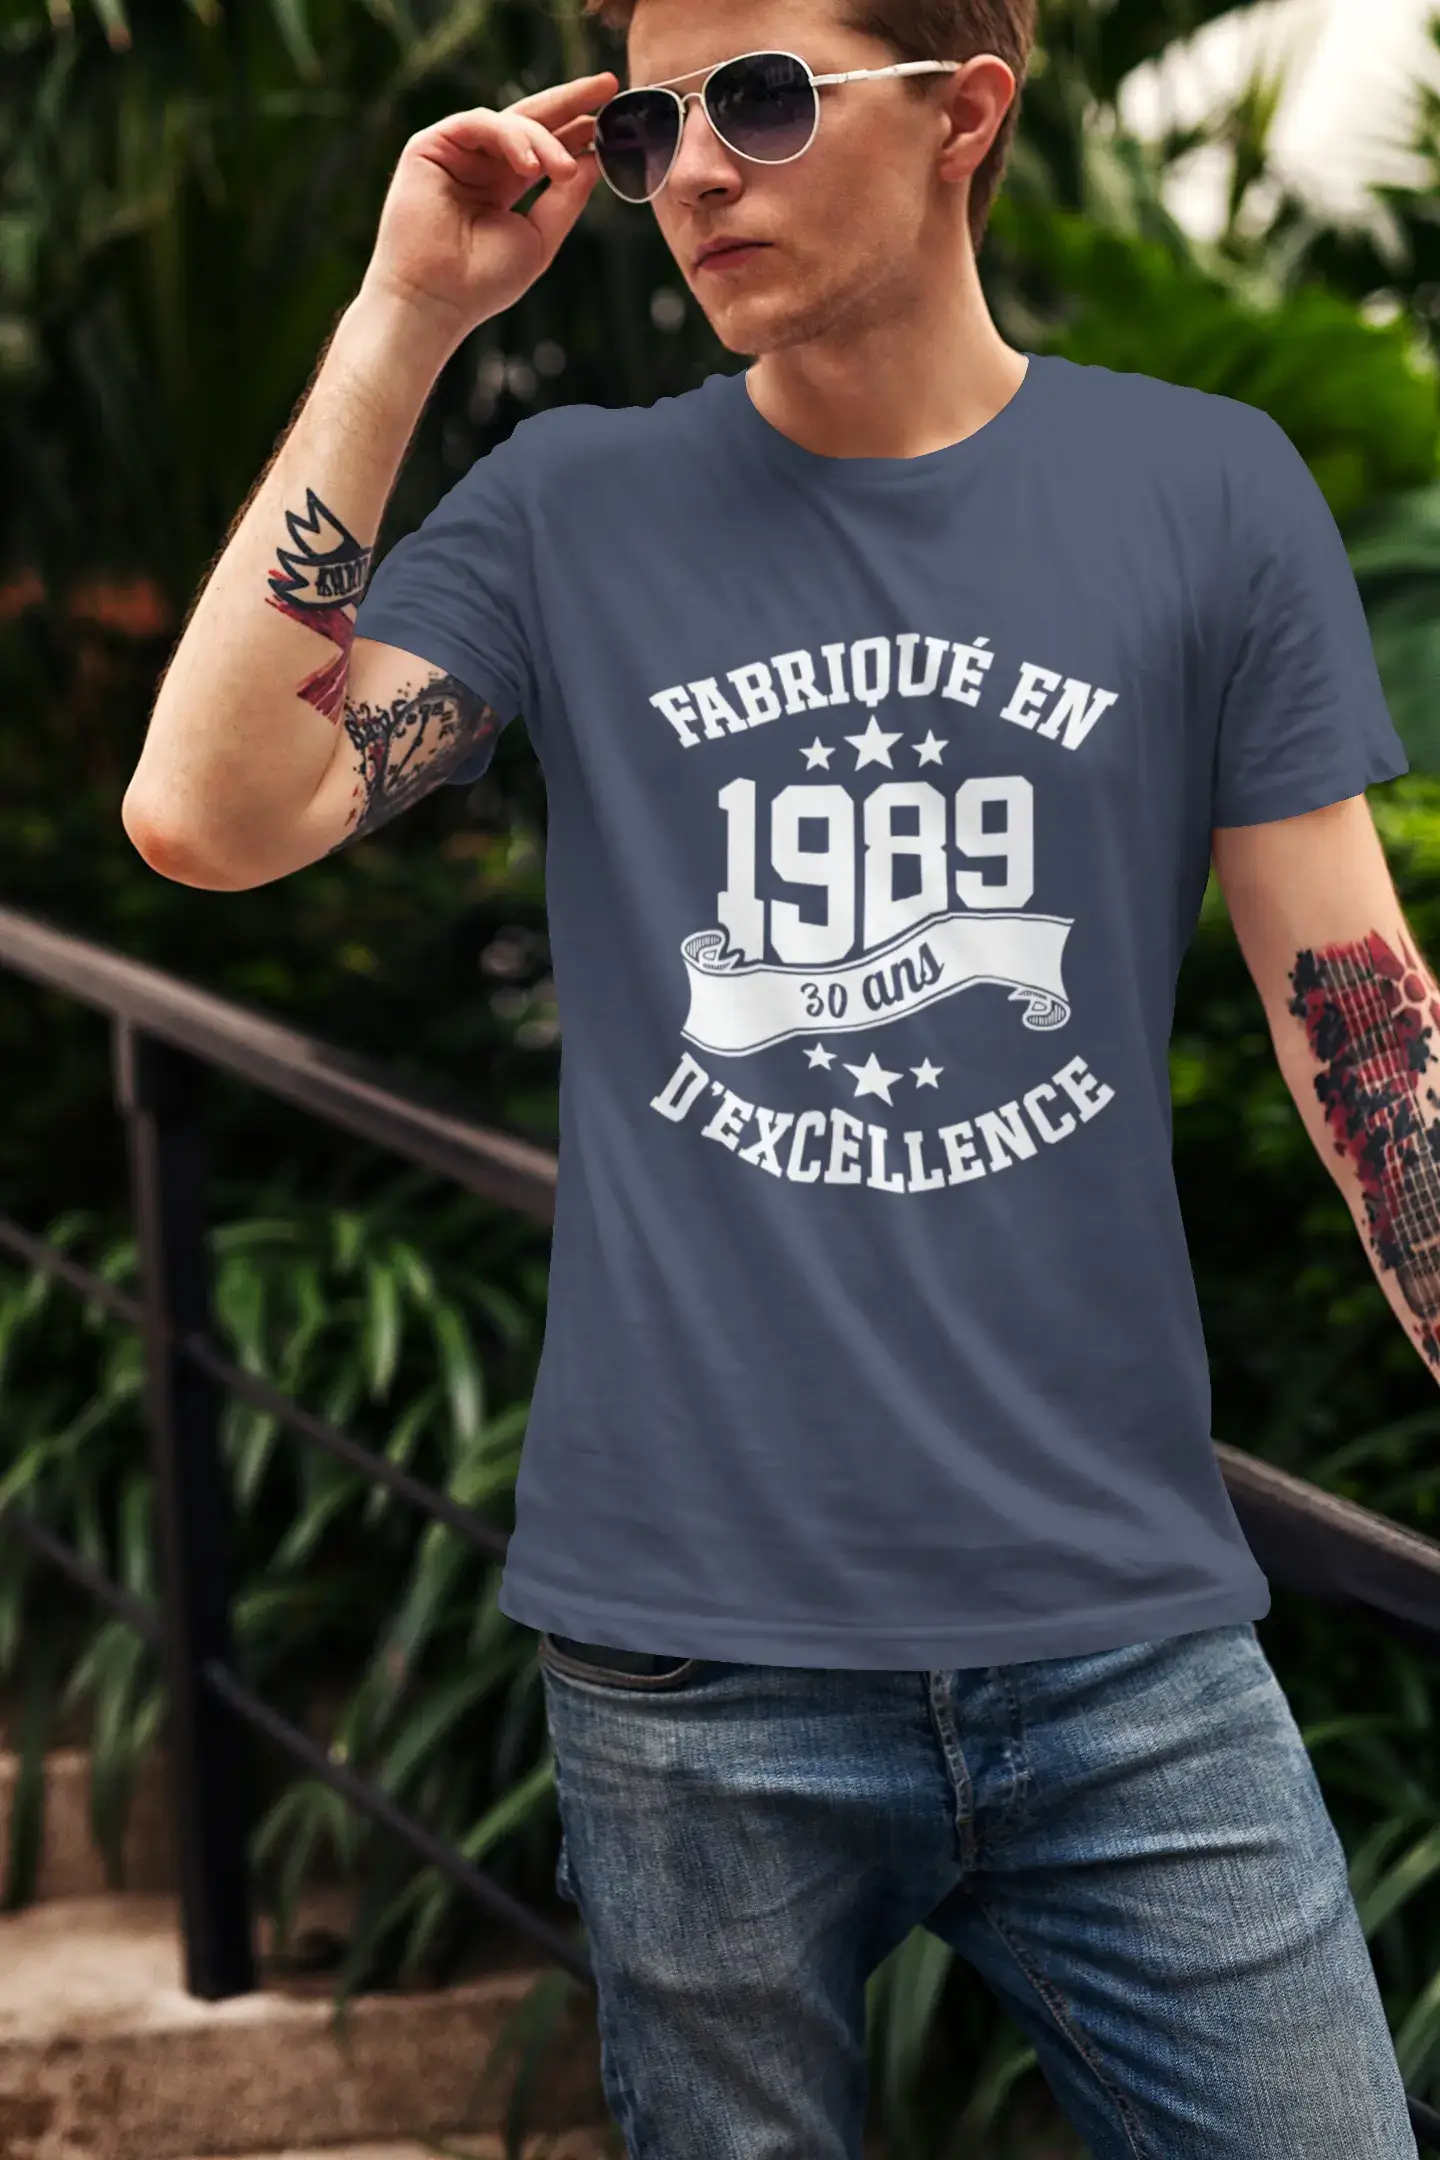 ULTRABASIC – Hergestellt im Jahr 1989, 30 Jahre alt. Original Unisex T-Shirt Grau